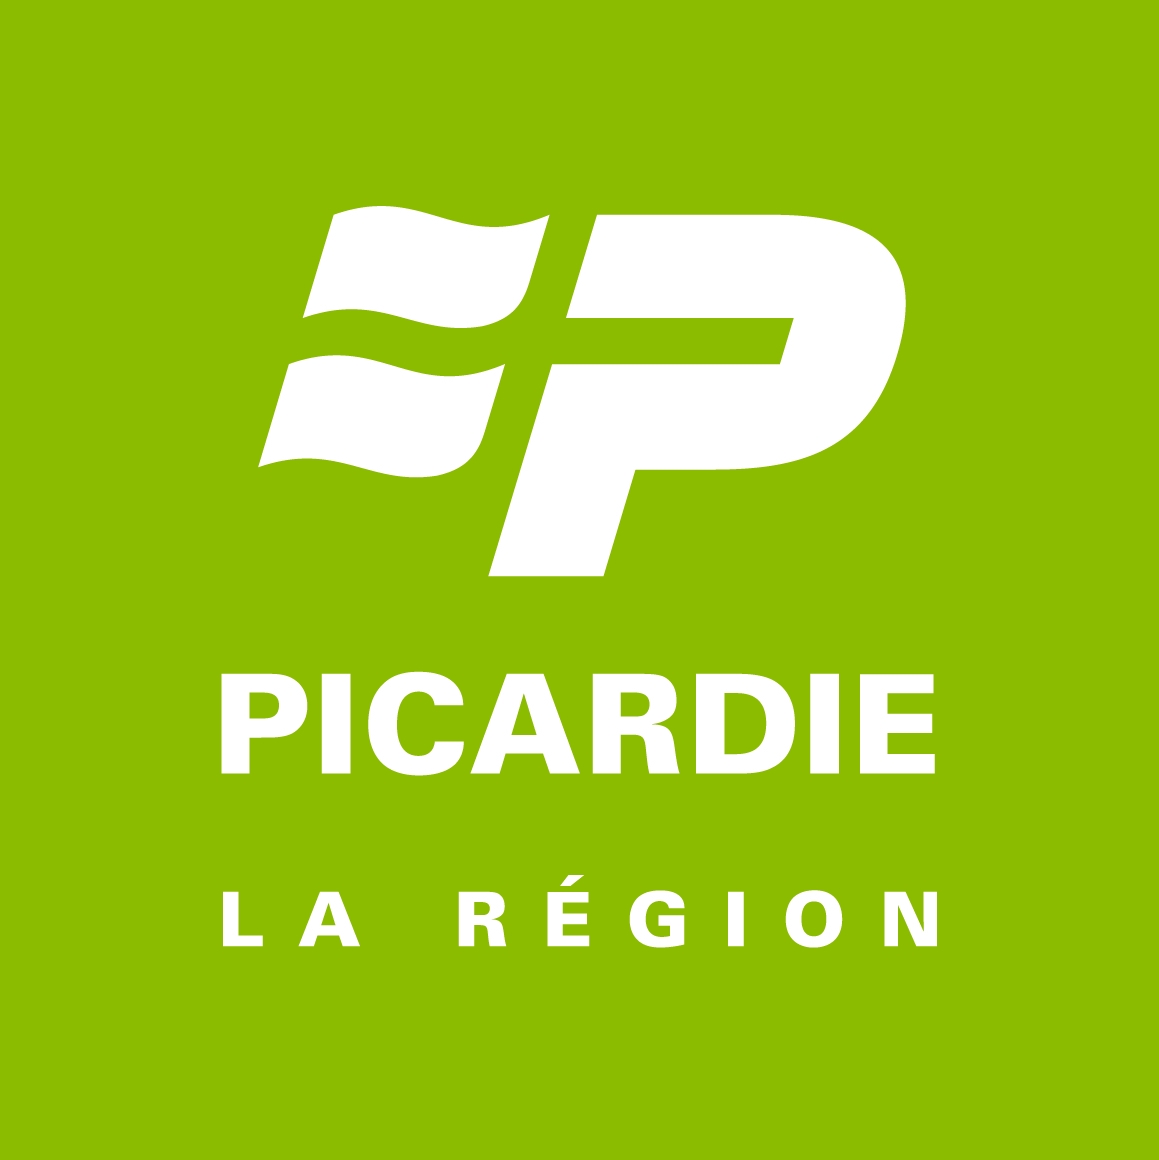 CR Picardie